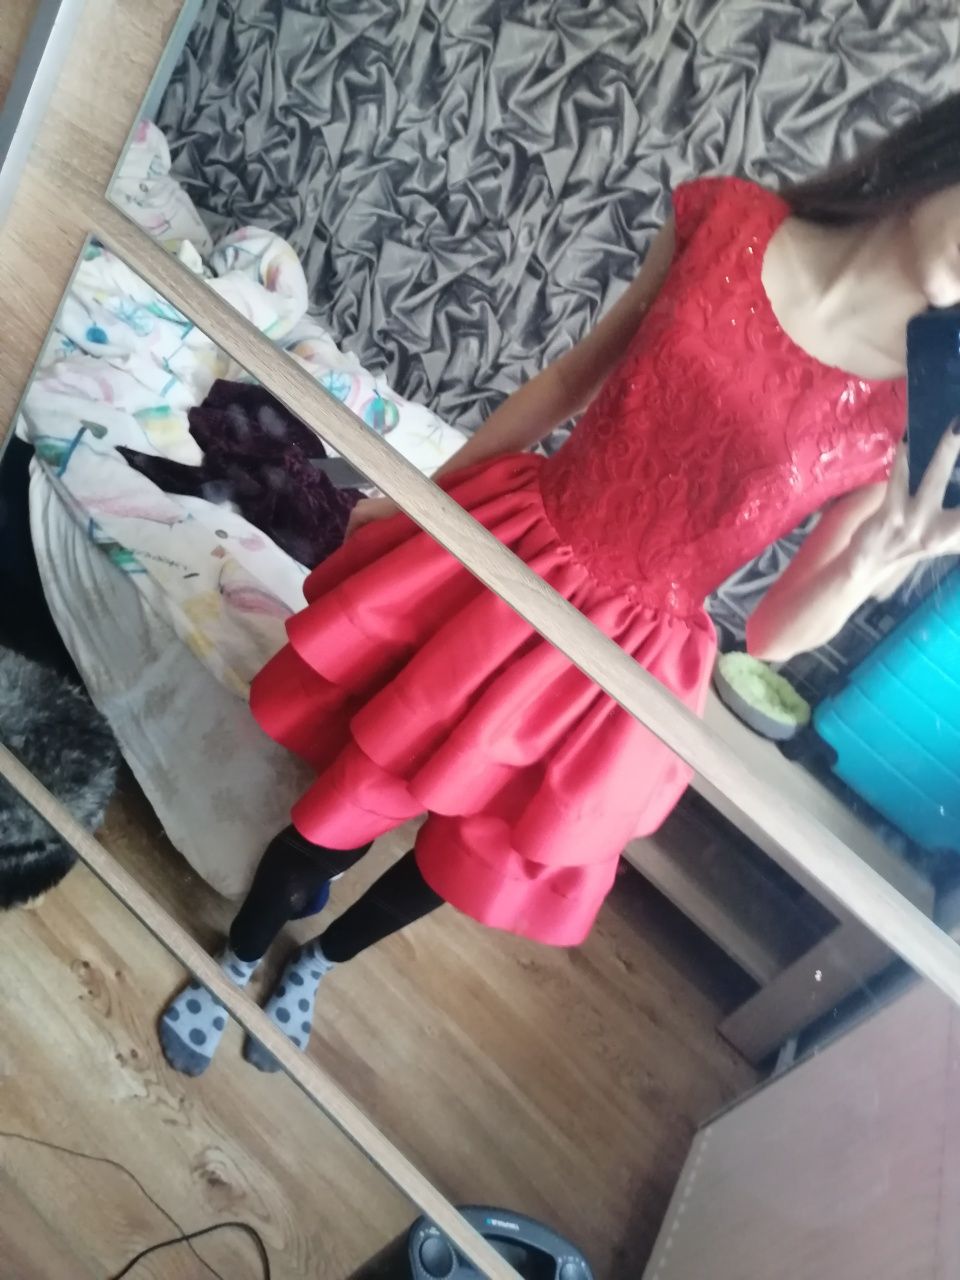 Czerwona sukienka z falbankami